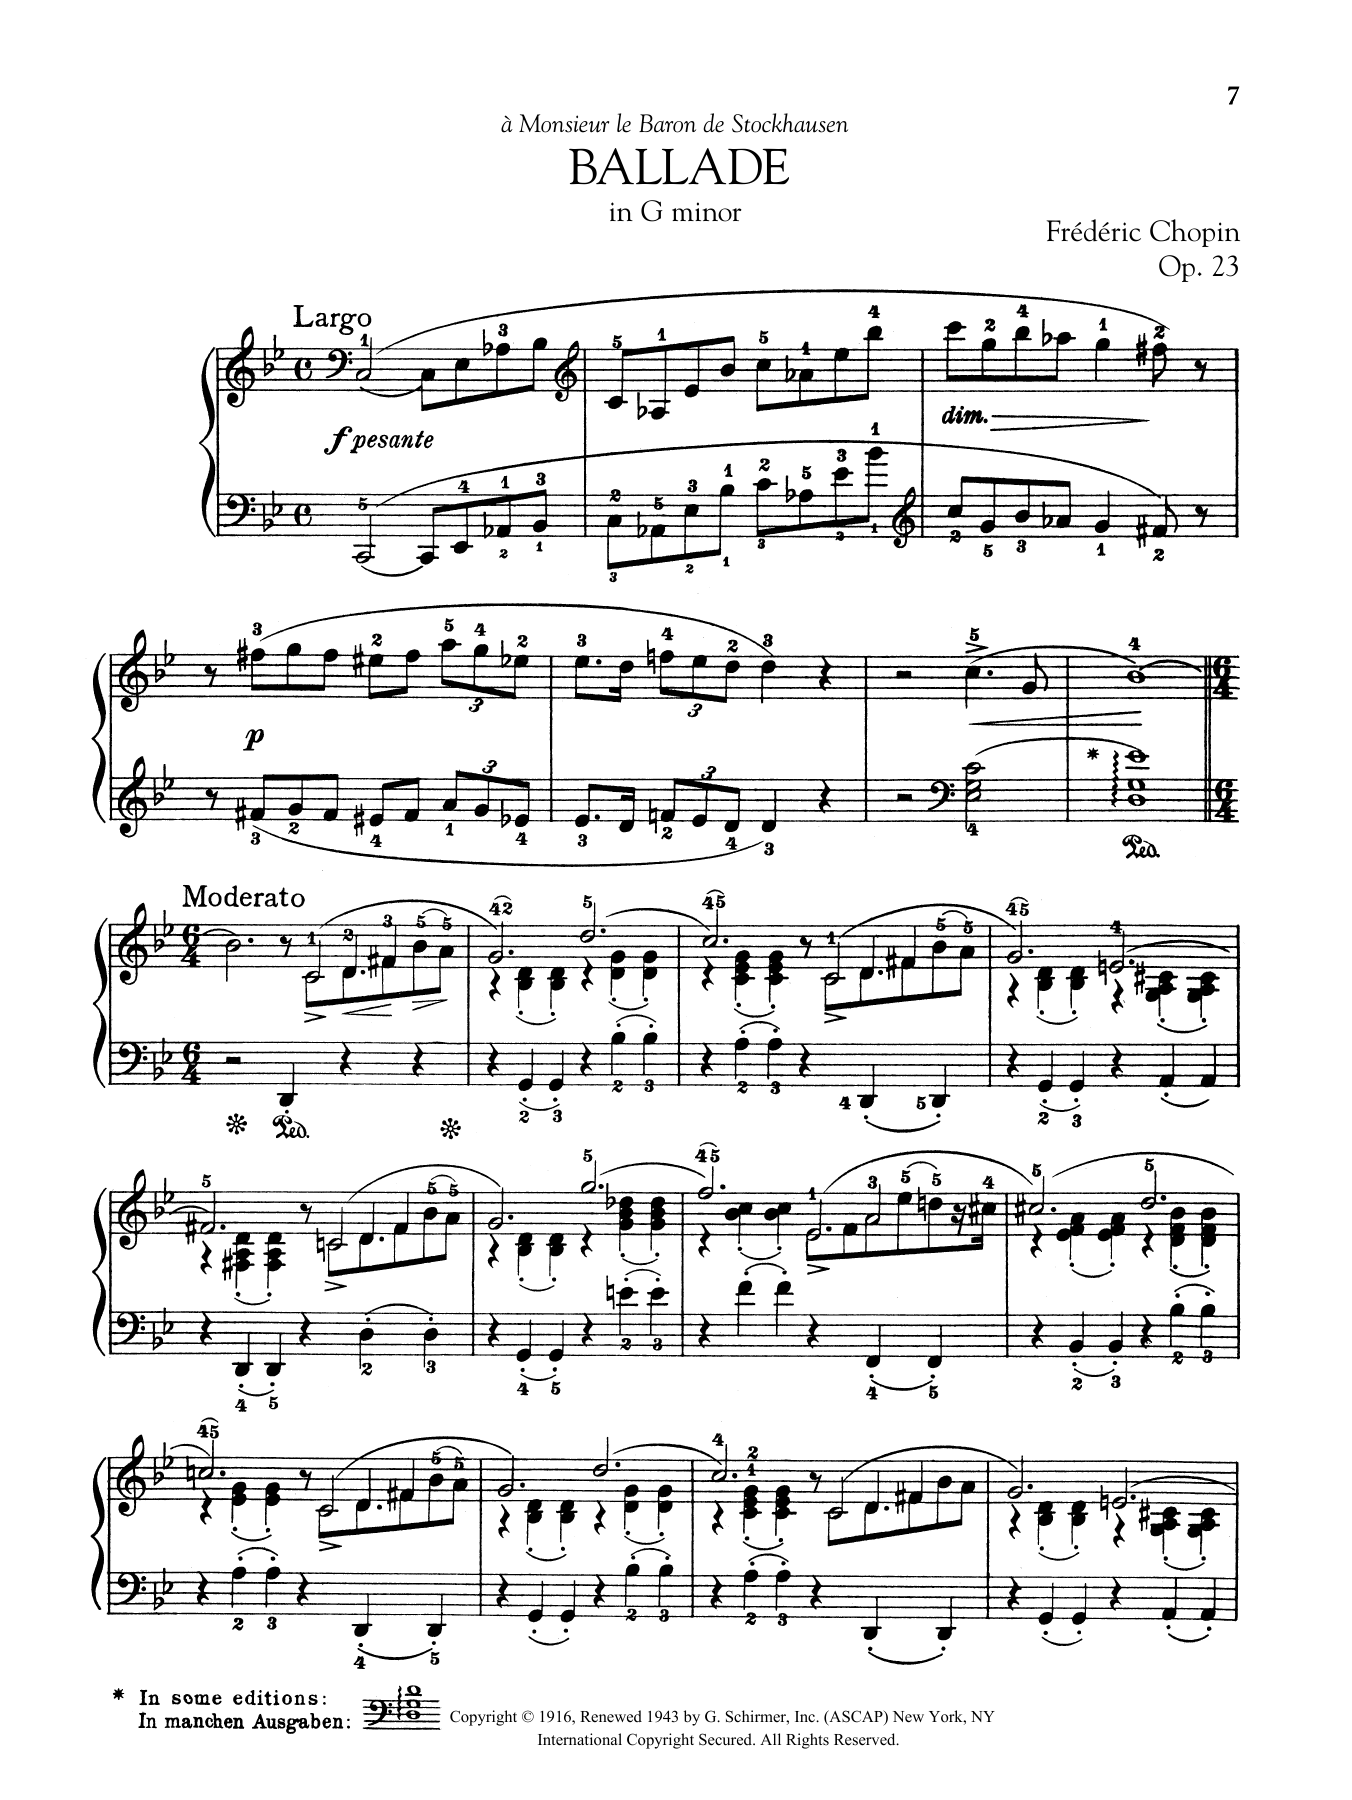 Ballade in G minor, Op. 23 sheet music